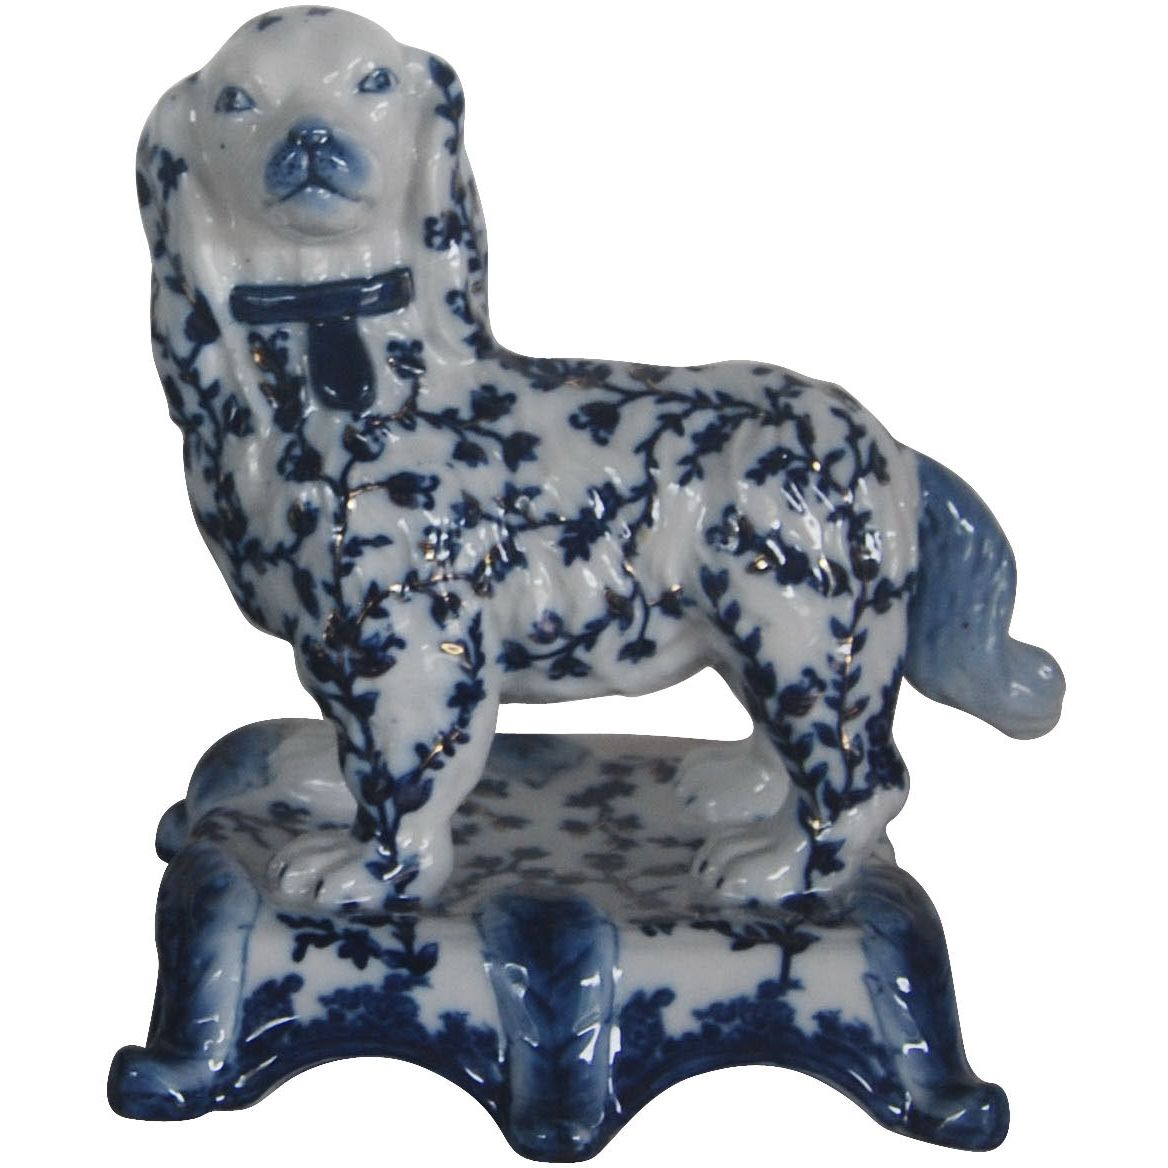 Фигурка Glasar собака бело-синяя 19х18х23 см фигурка glasar верблюд 23x9x18см